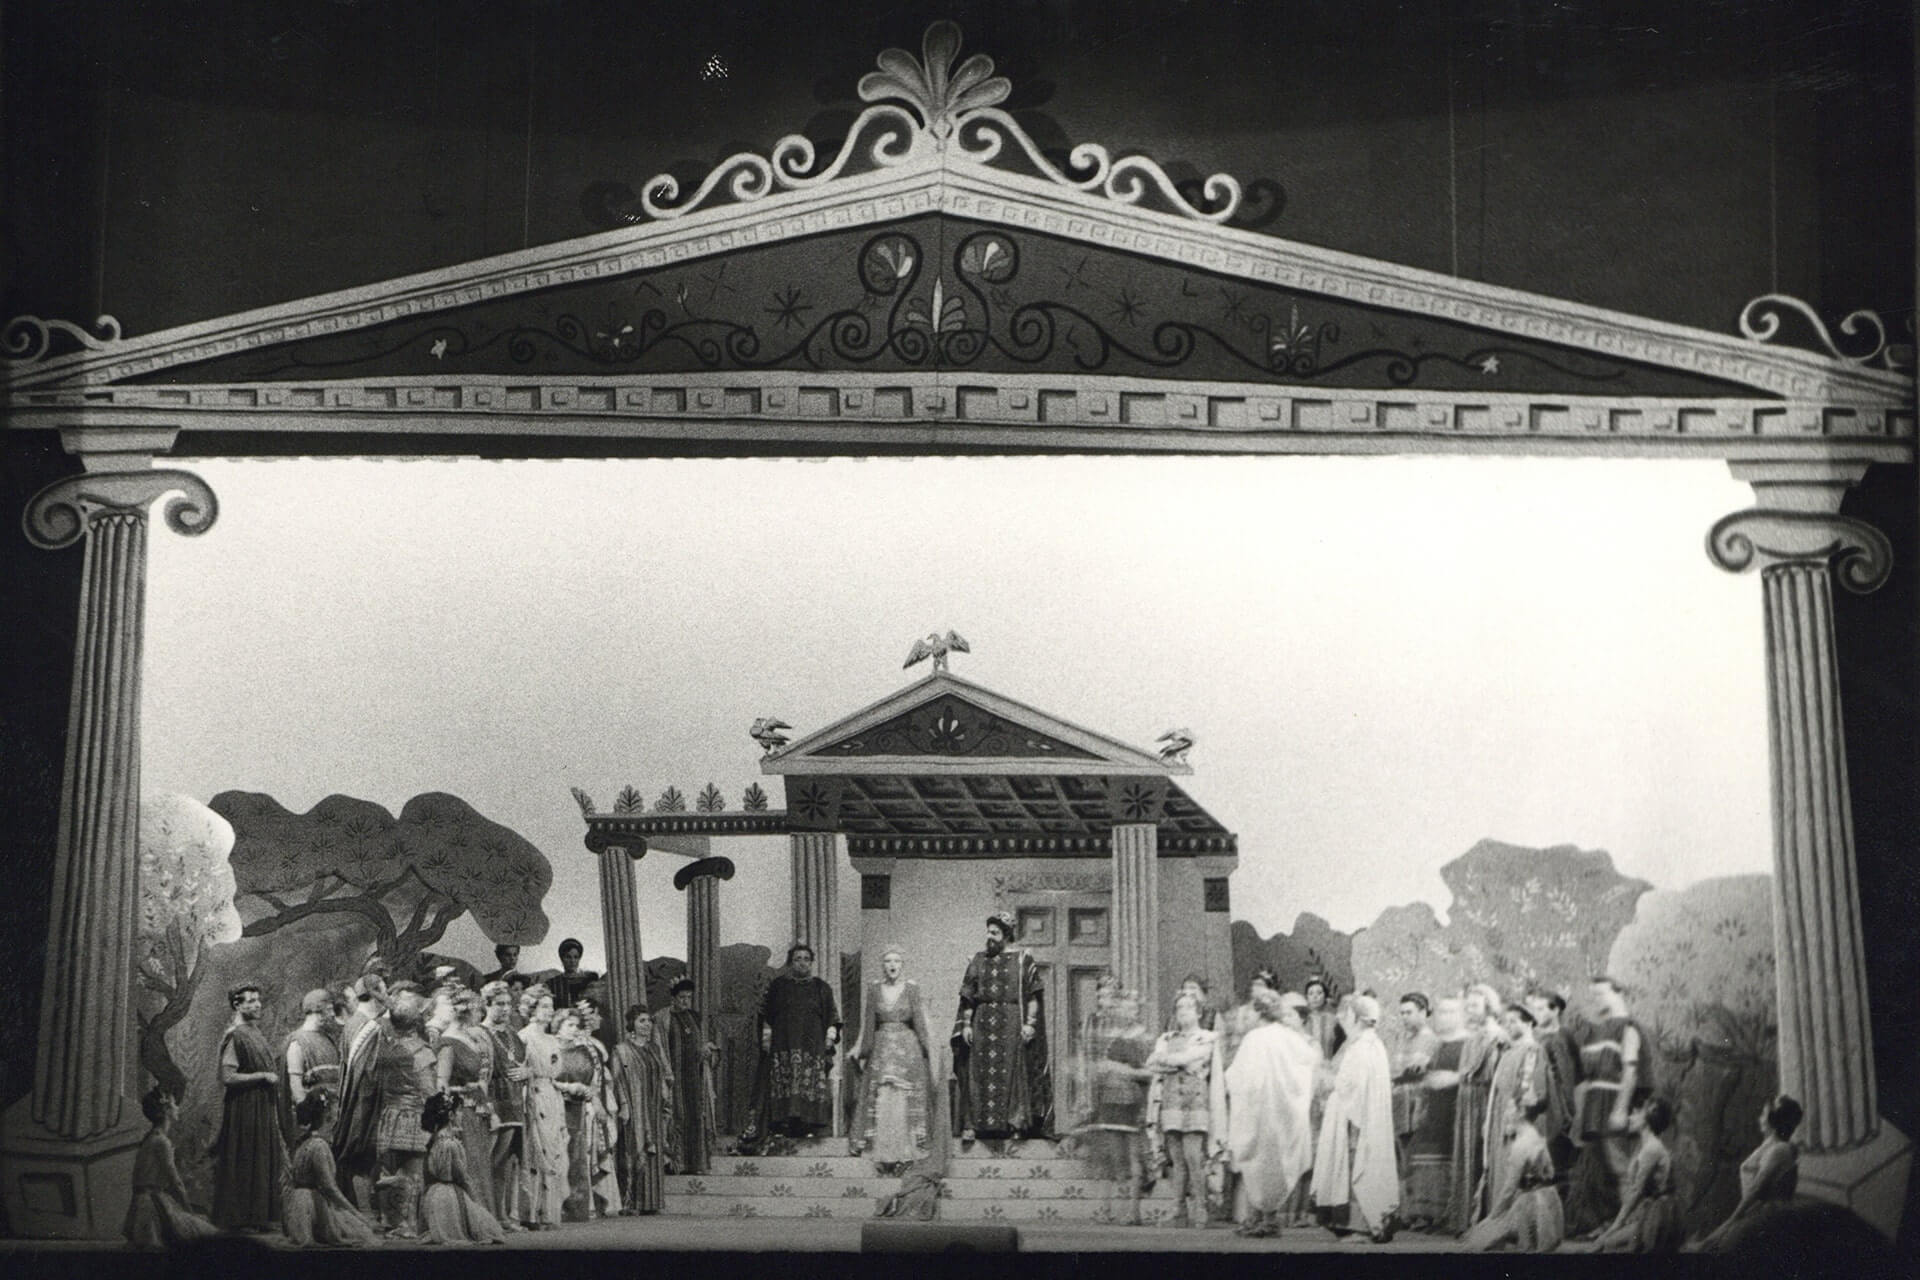 Η Ωραία Ελένη του Ζακ Όφενμπαχ, σε μουσική διεύθυνση Βάλτερ Πφέφερ, σκηνοθεσία Φρίξου Θεολογίδη, σκηνικά και κοστούμια Λίζας Ζαΐμη, Θέατρο Ολύμπια (1960/61), φωτογραφία από το αρχείο της ΕΛΣ.